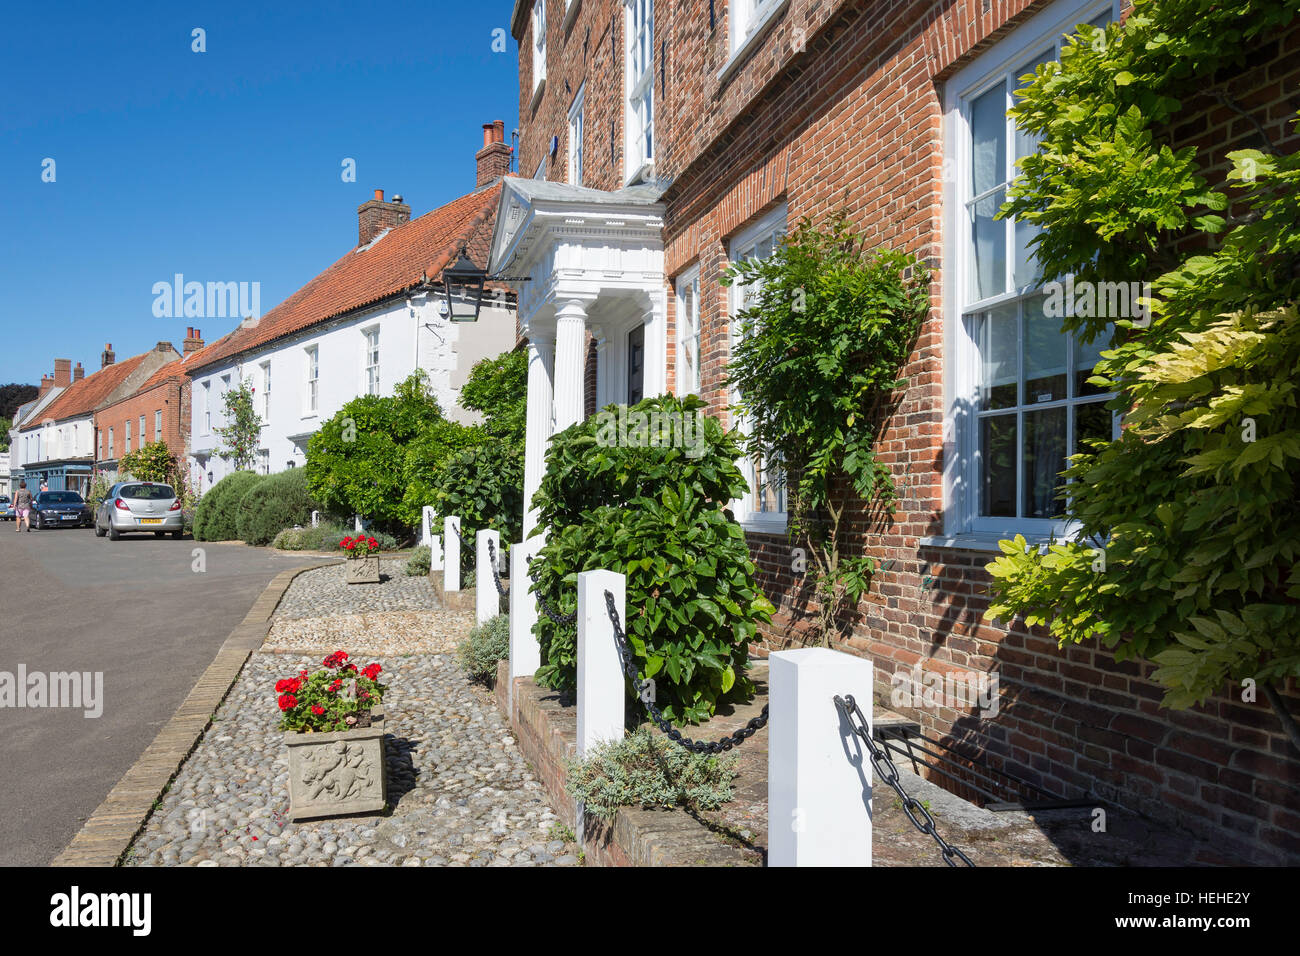 Period houses, Market Place, Burnham Market, Norfolk, England, United Kingdom Stock Photo